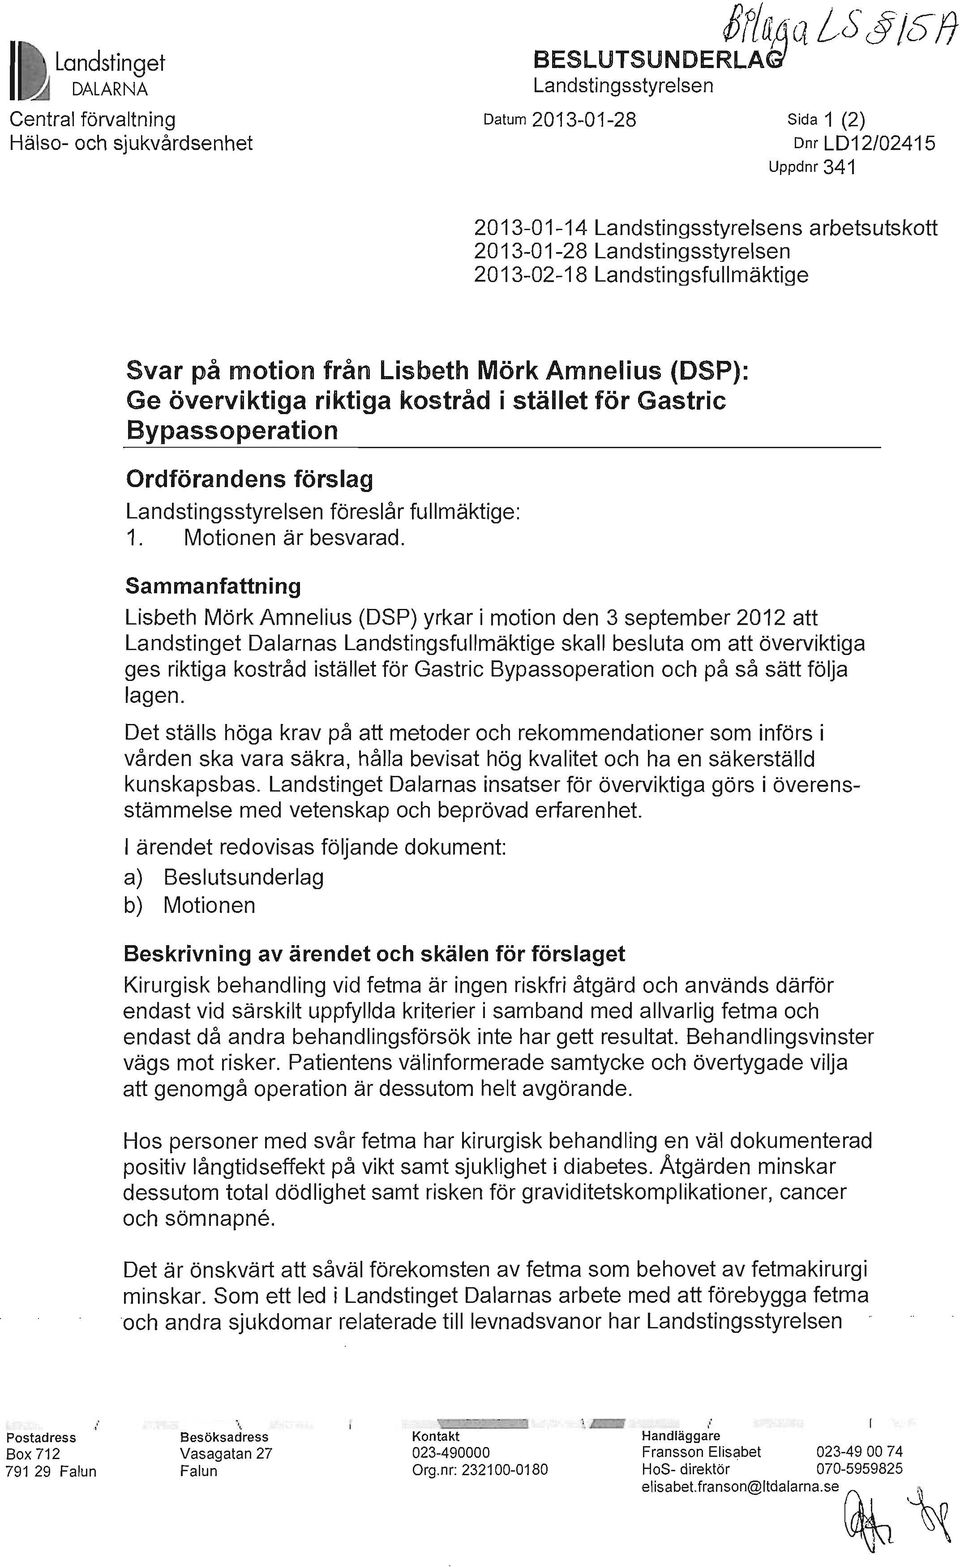 2013-01-28 Landstingsstyrelsen 2013-02-18 Landstingsfullmäktige Svar på motion från Lisbeth Mörk Amnelius (DSP): Ge överviktiga riktiga kostråd i stället för Gastric Bypassoperation Ordförandens